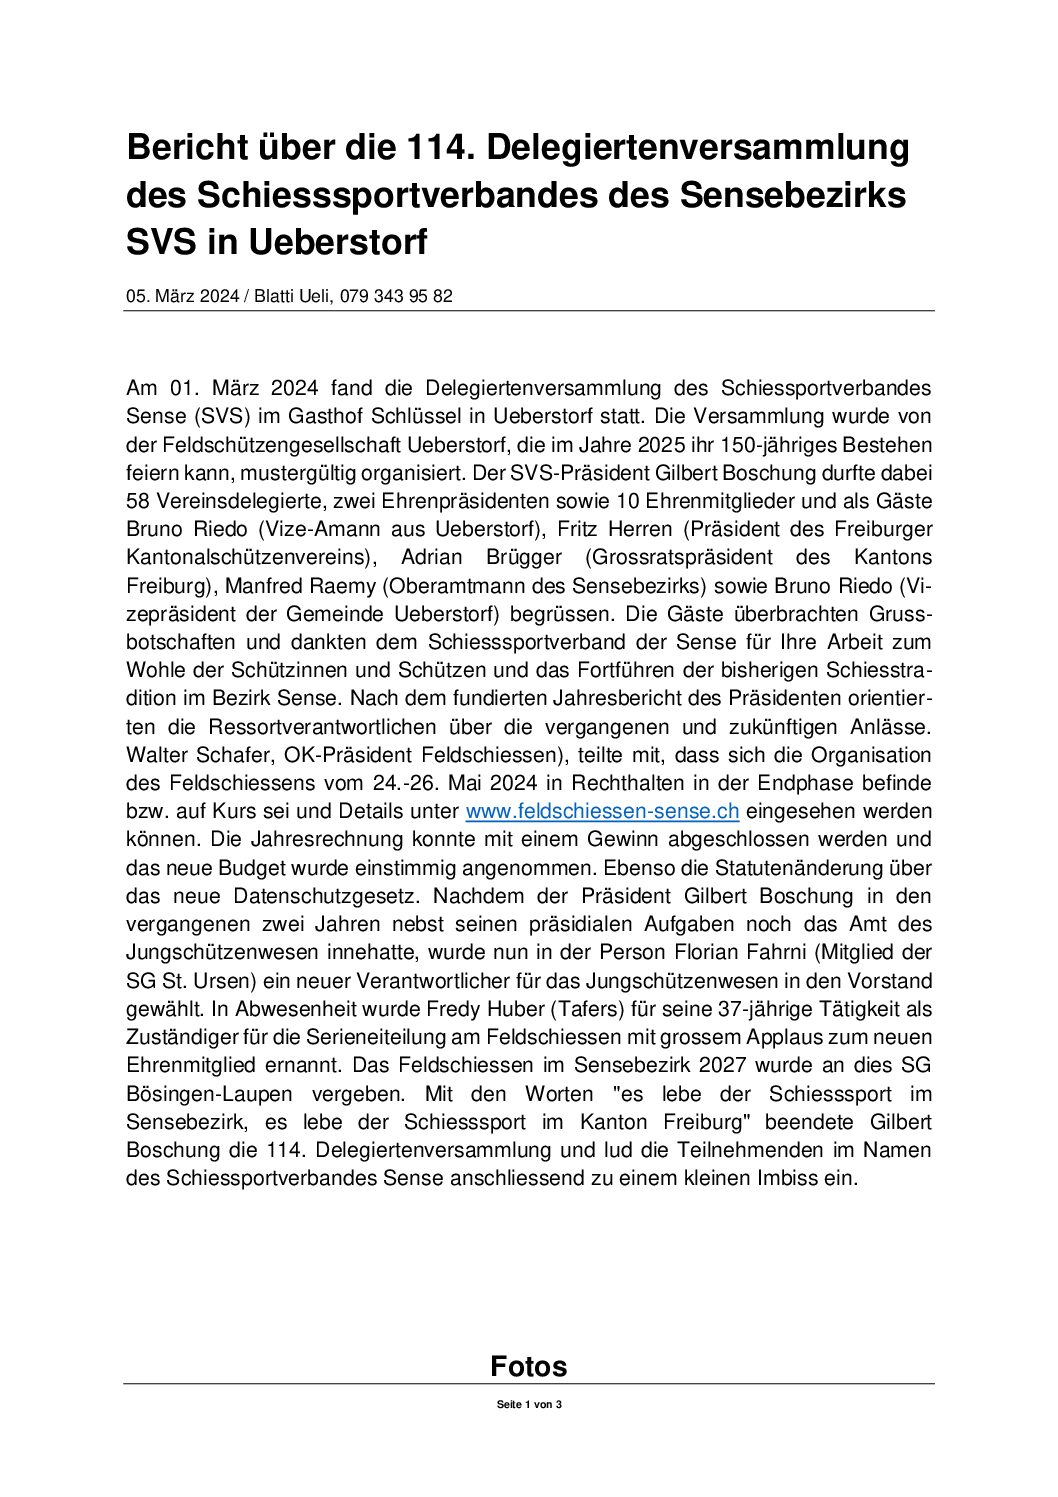 You are currently viewing  Bericht über die 114. Delegiertenversammlung des Schiesssportverbandes des Sensebezirks SVS in Ueberstorf 